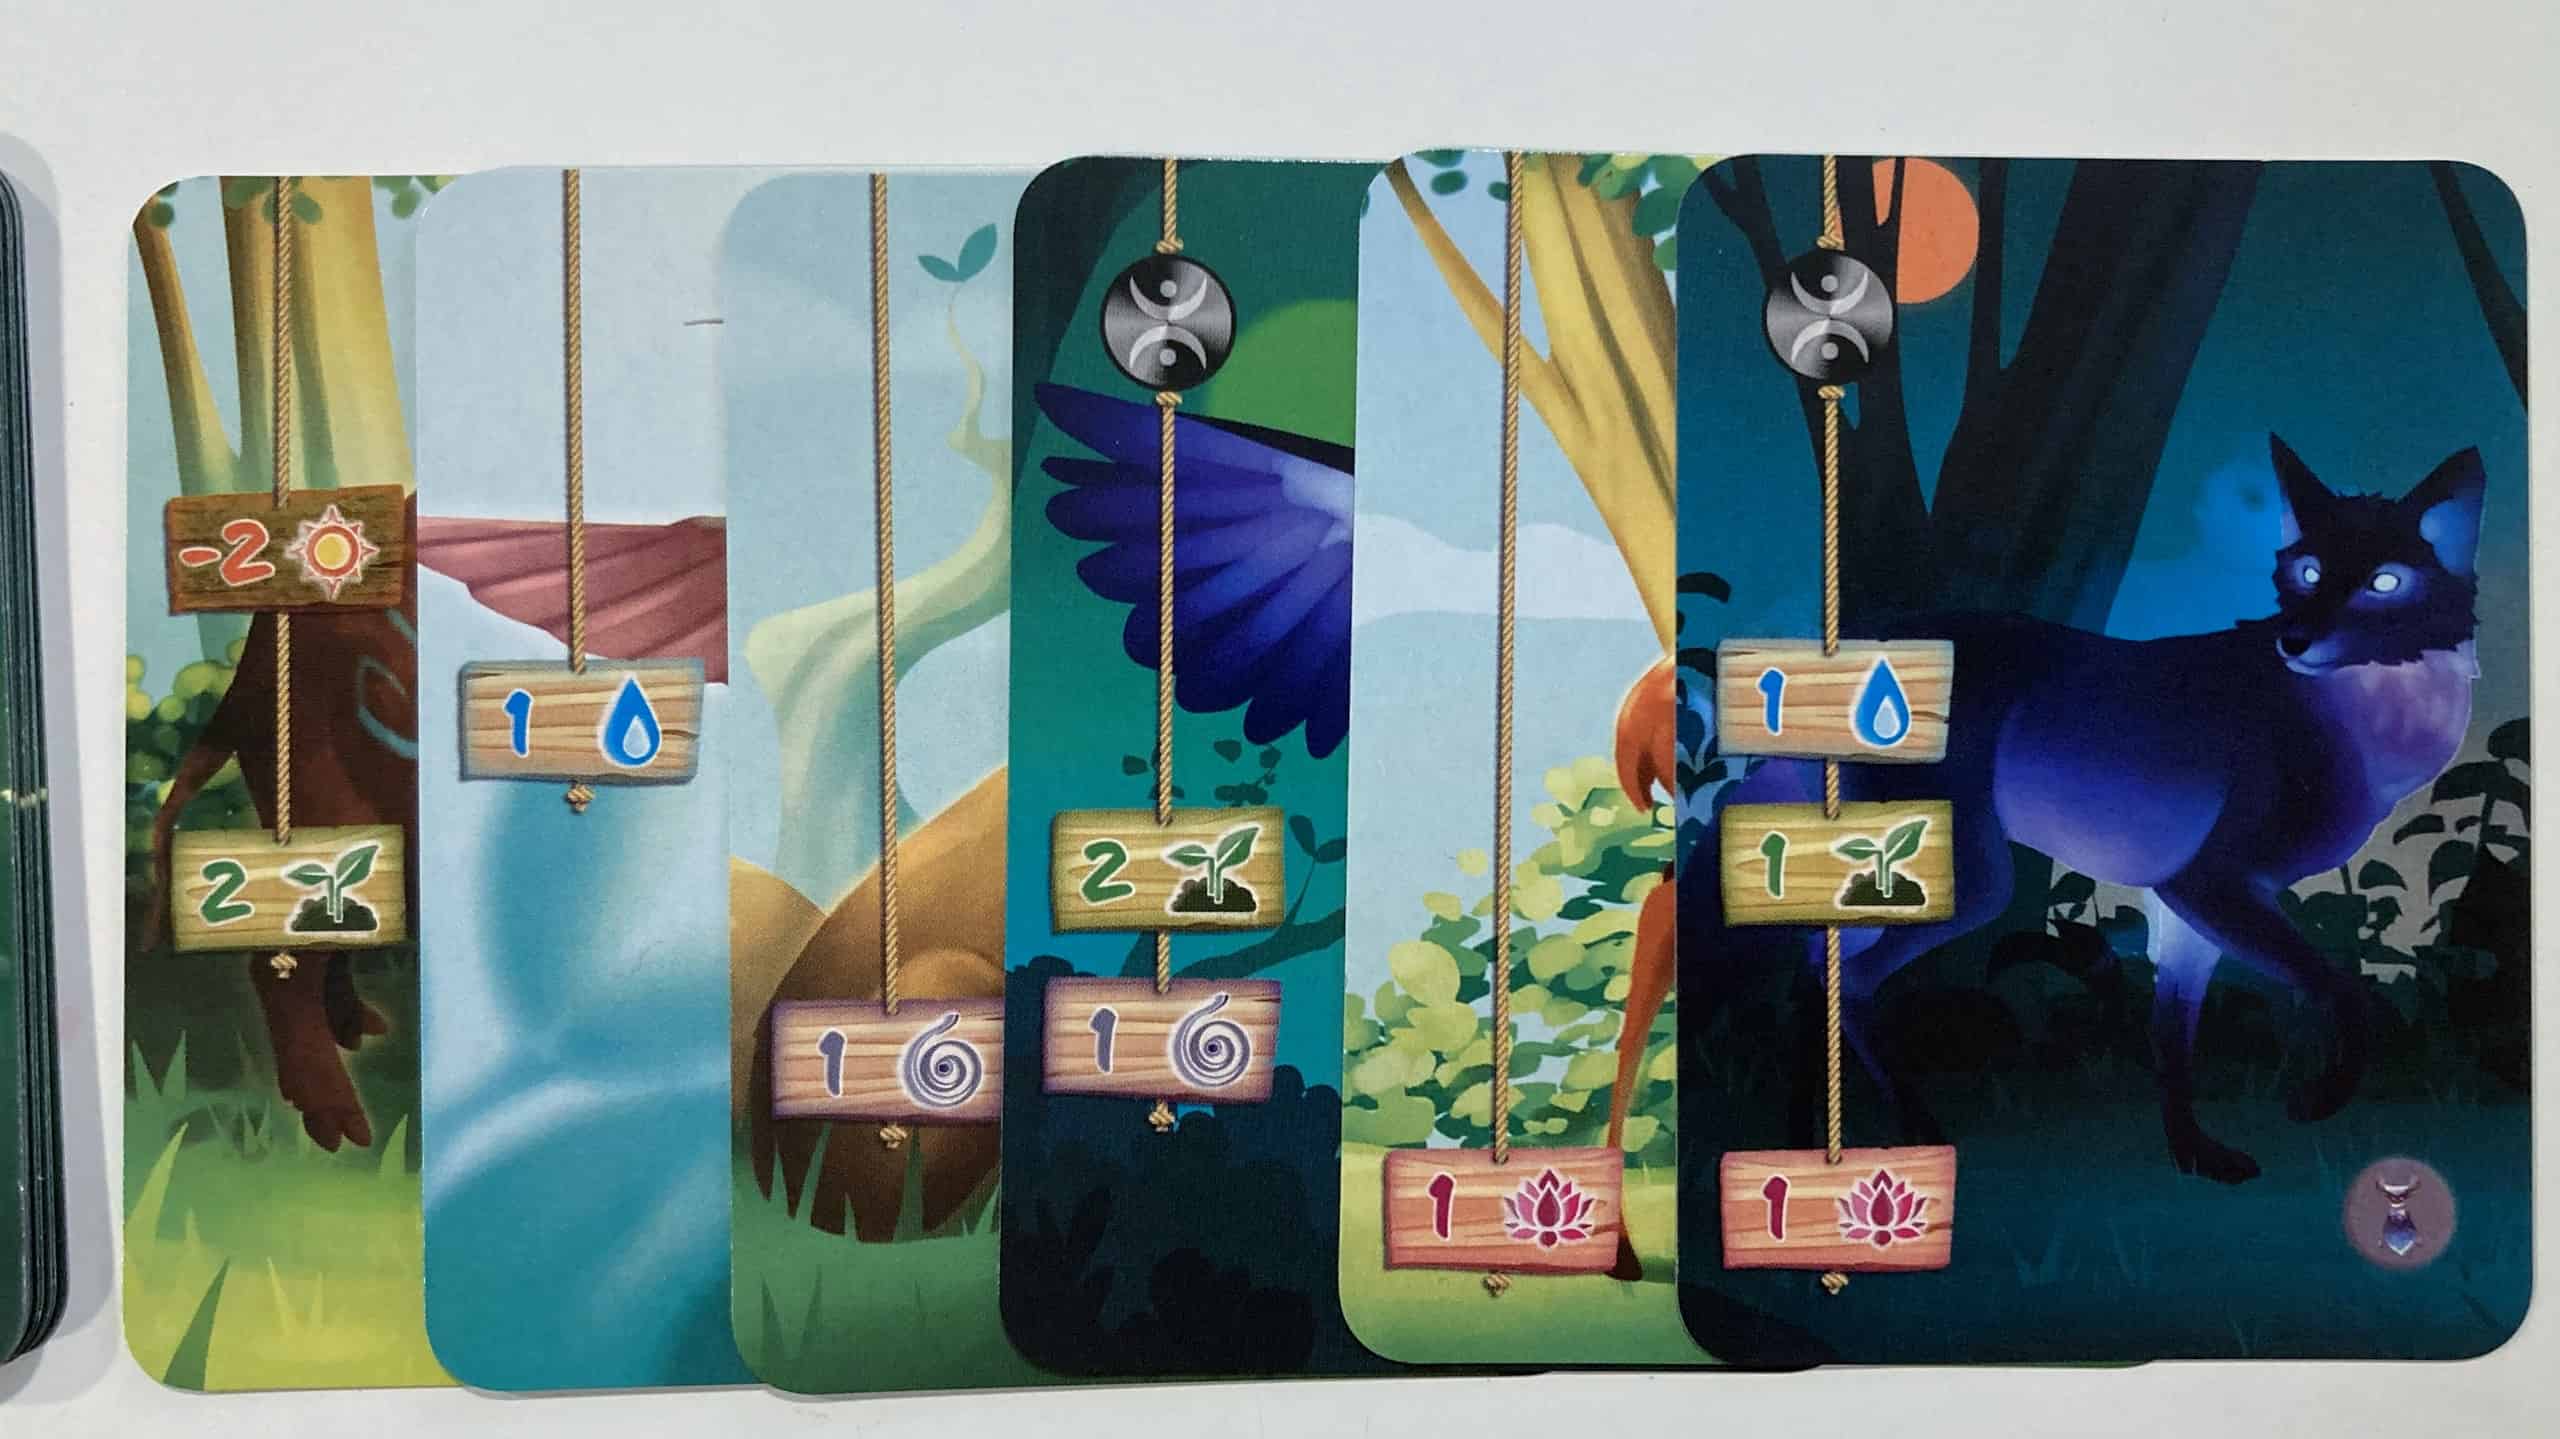 Rivi kortteja, joiden reunoissa näkyy symboleita, mukaanlukien kaksi erakkosymbolia